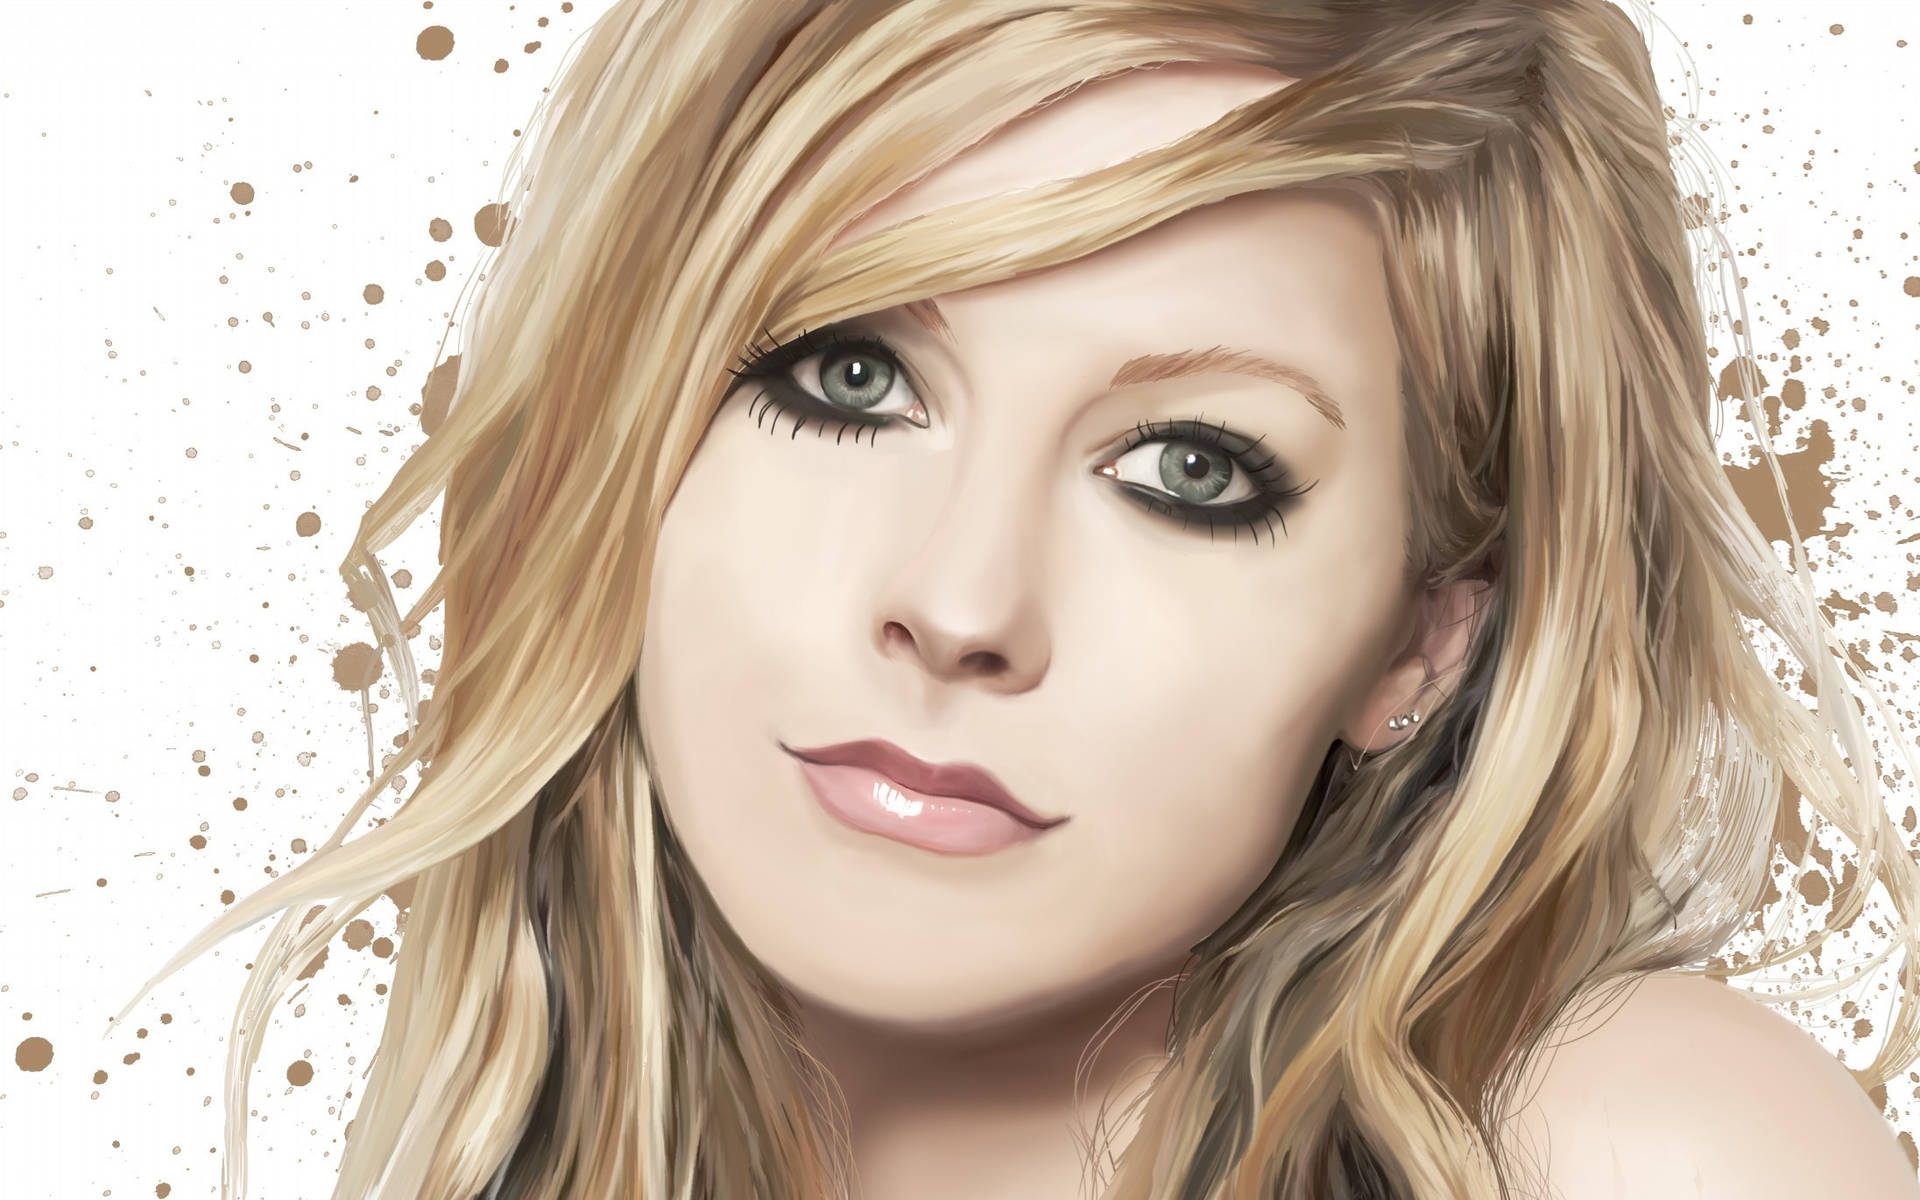 Avril Lavigne Digital Art Wallpaper